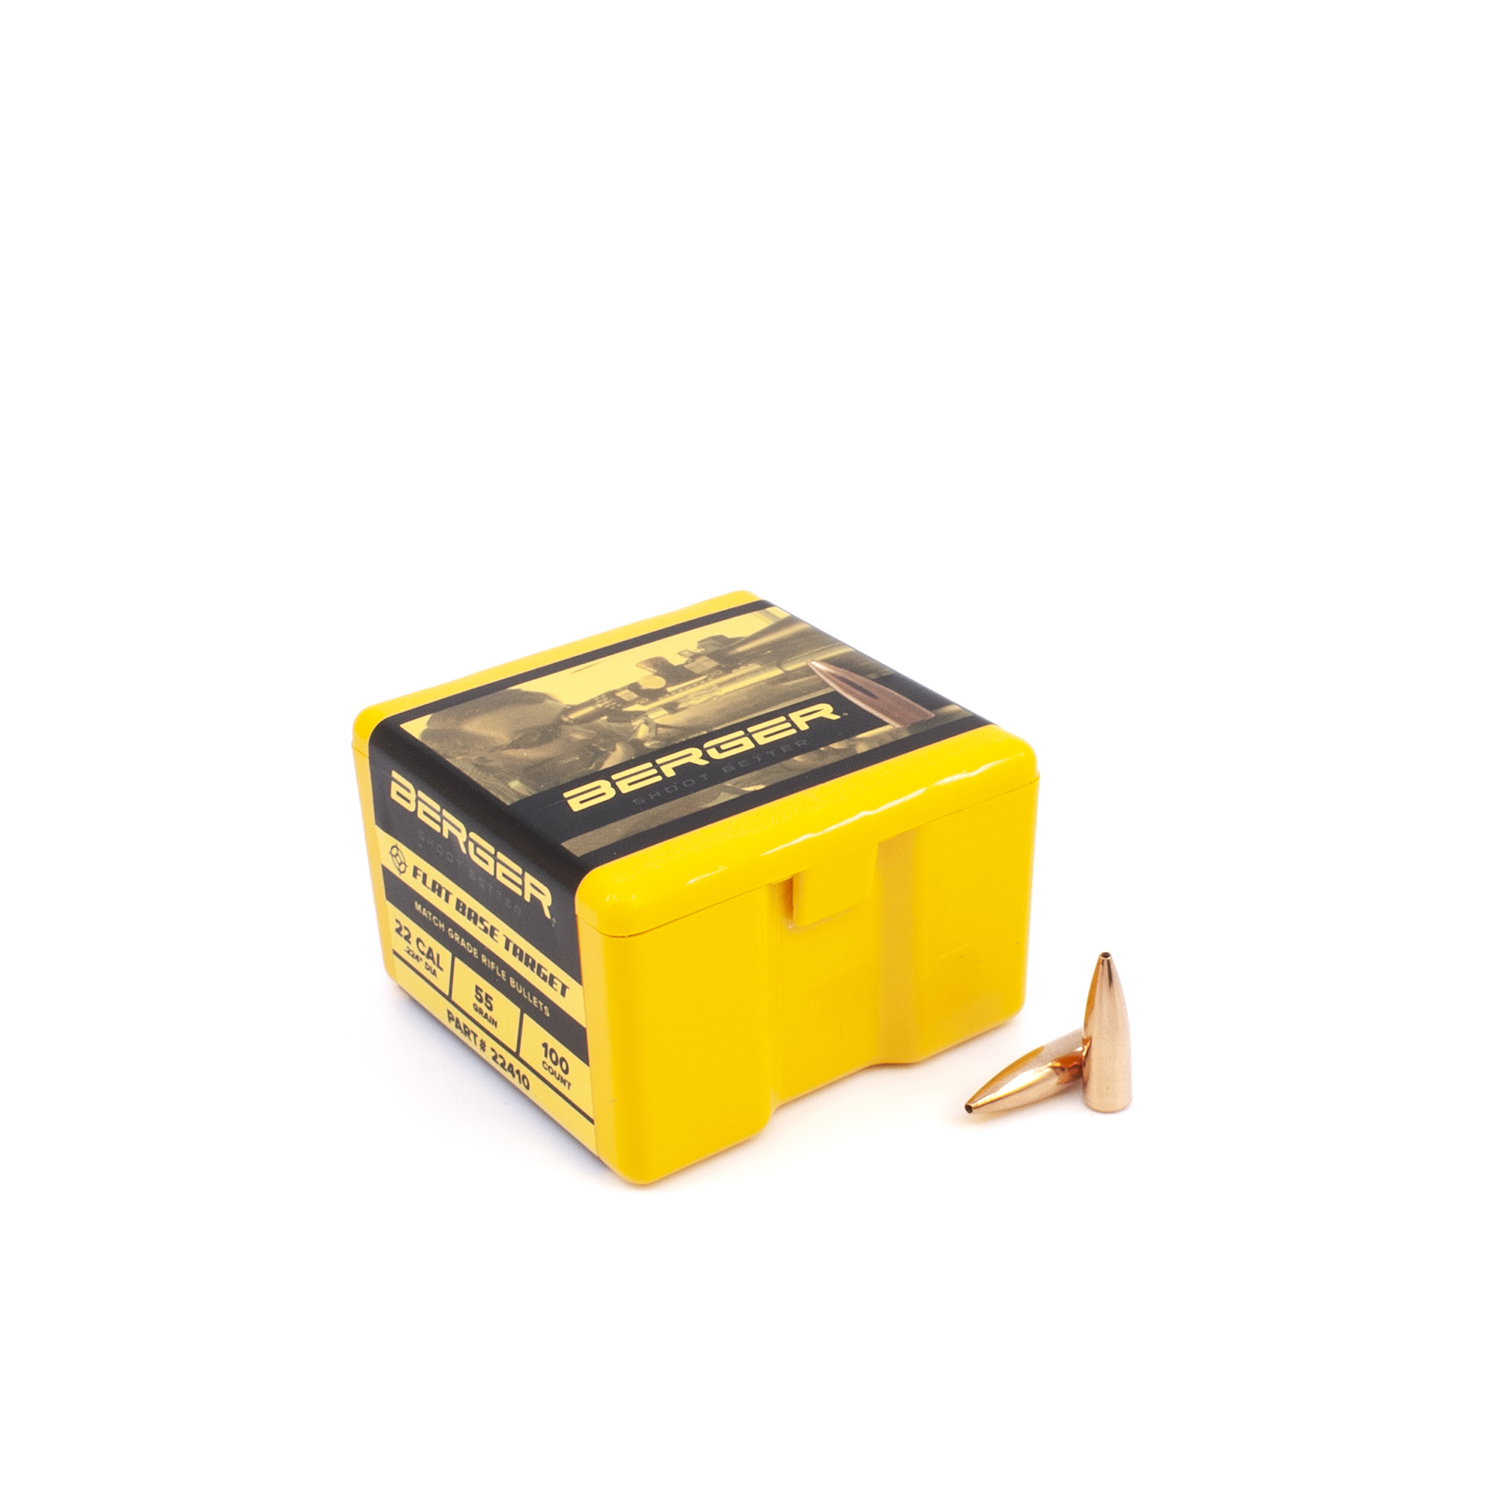 Berger Bullets - .22 cal, 55gr FB Target - Box of 100